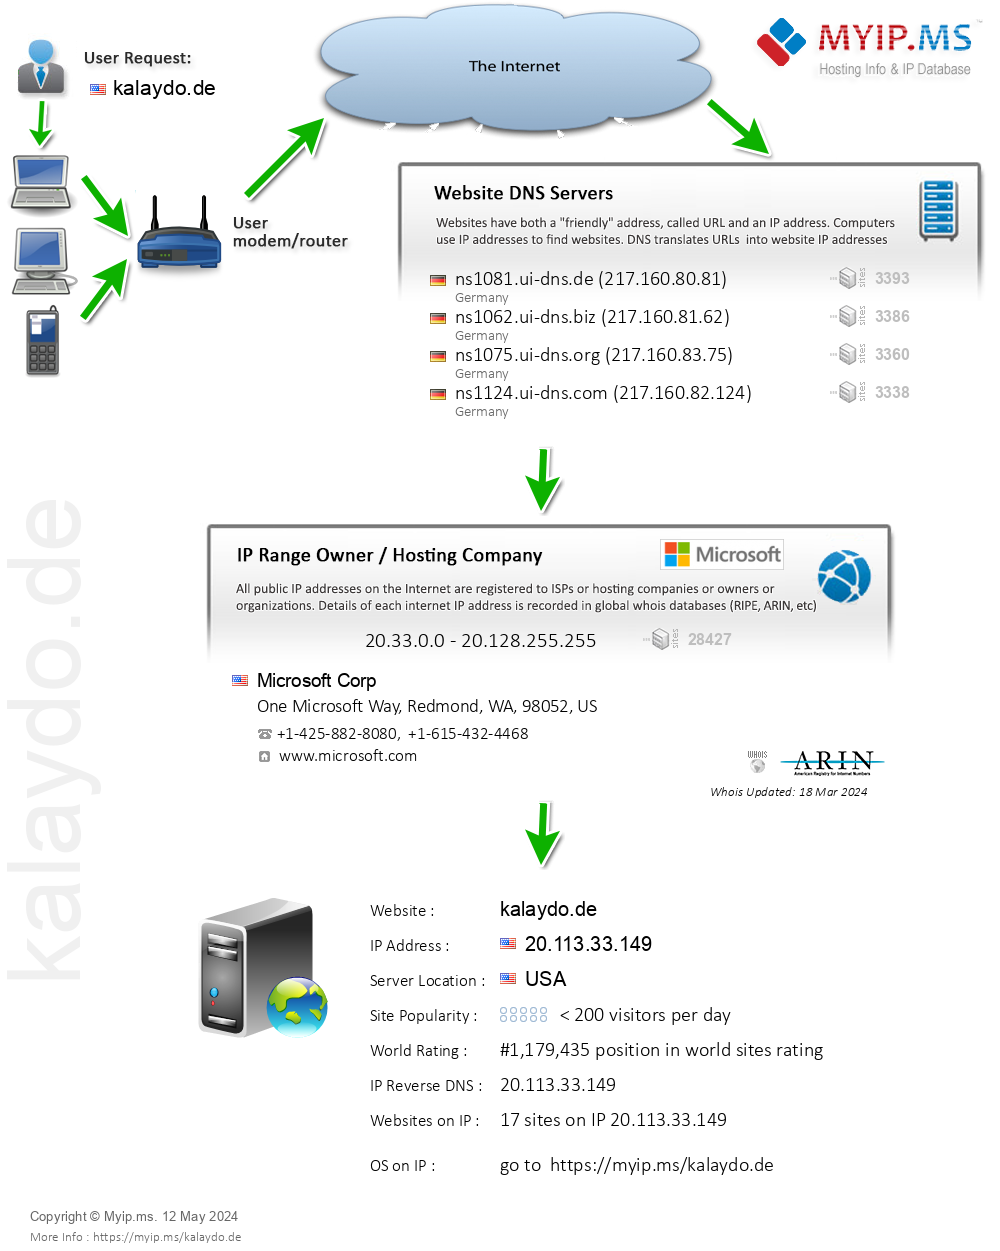 Kalaydo.de - Website Hosting Visual IP Diagram